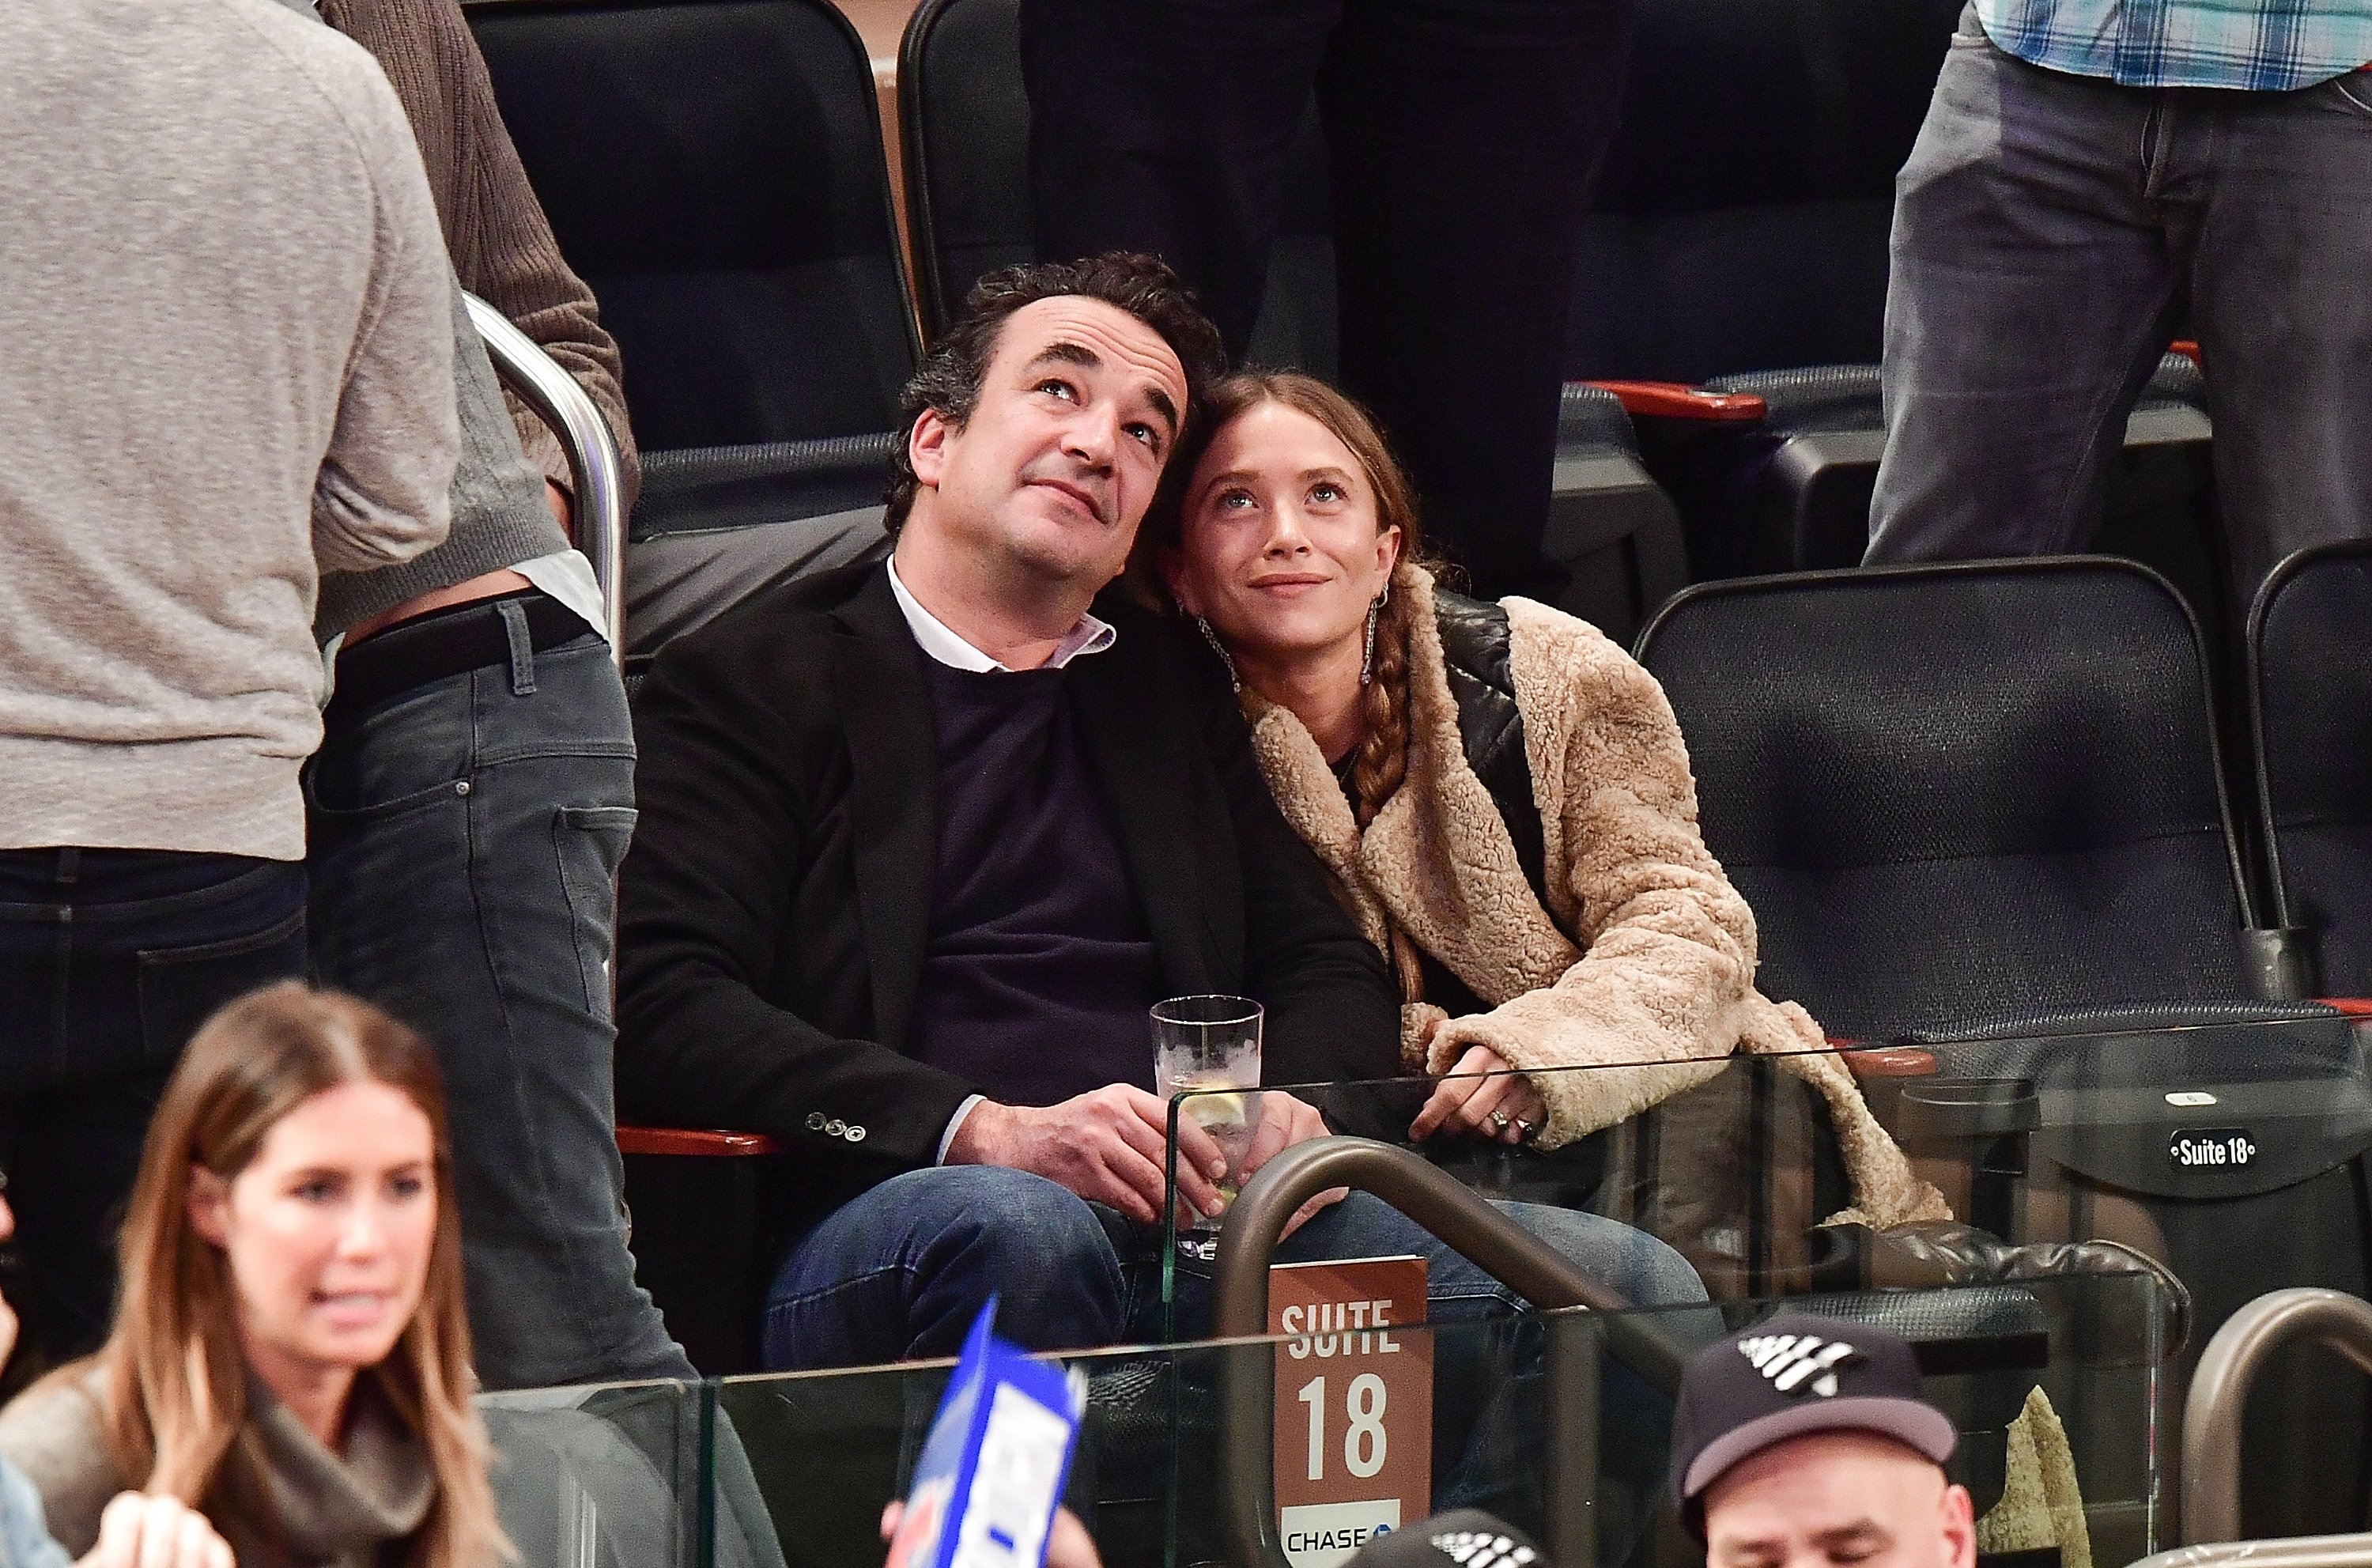 Olivier Sarkozy y Mary-Kate Olsen durante el juego New York Knicks vs Brooklyn Nets en el Madison Square Garden, el 9 de noviembre de 2016 en Nueva York. | Foto: Getty Images